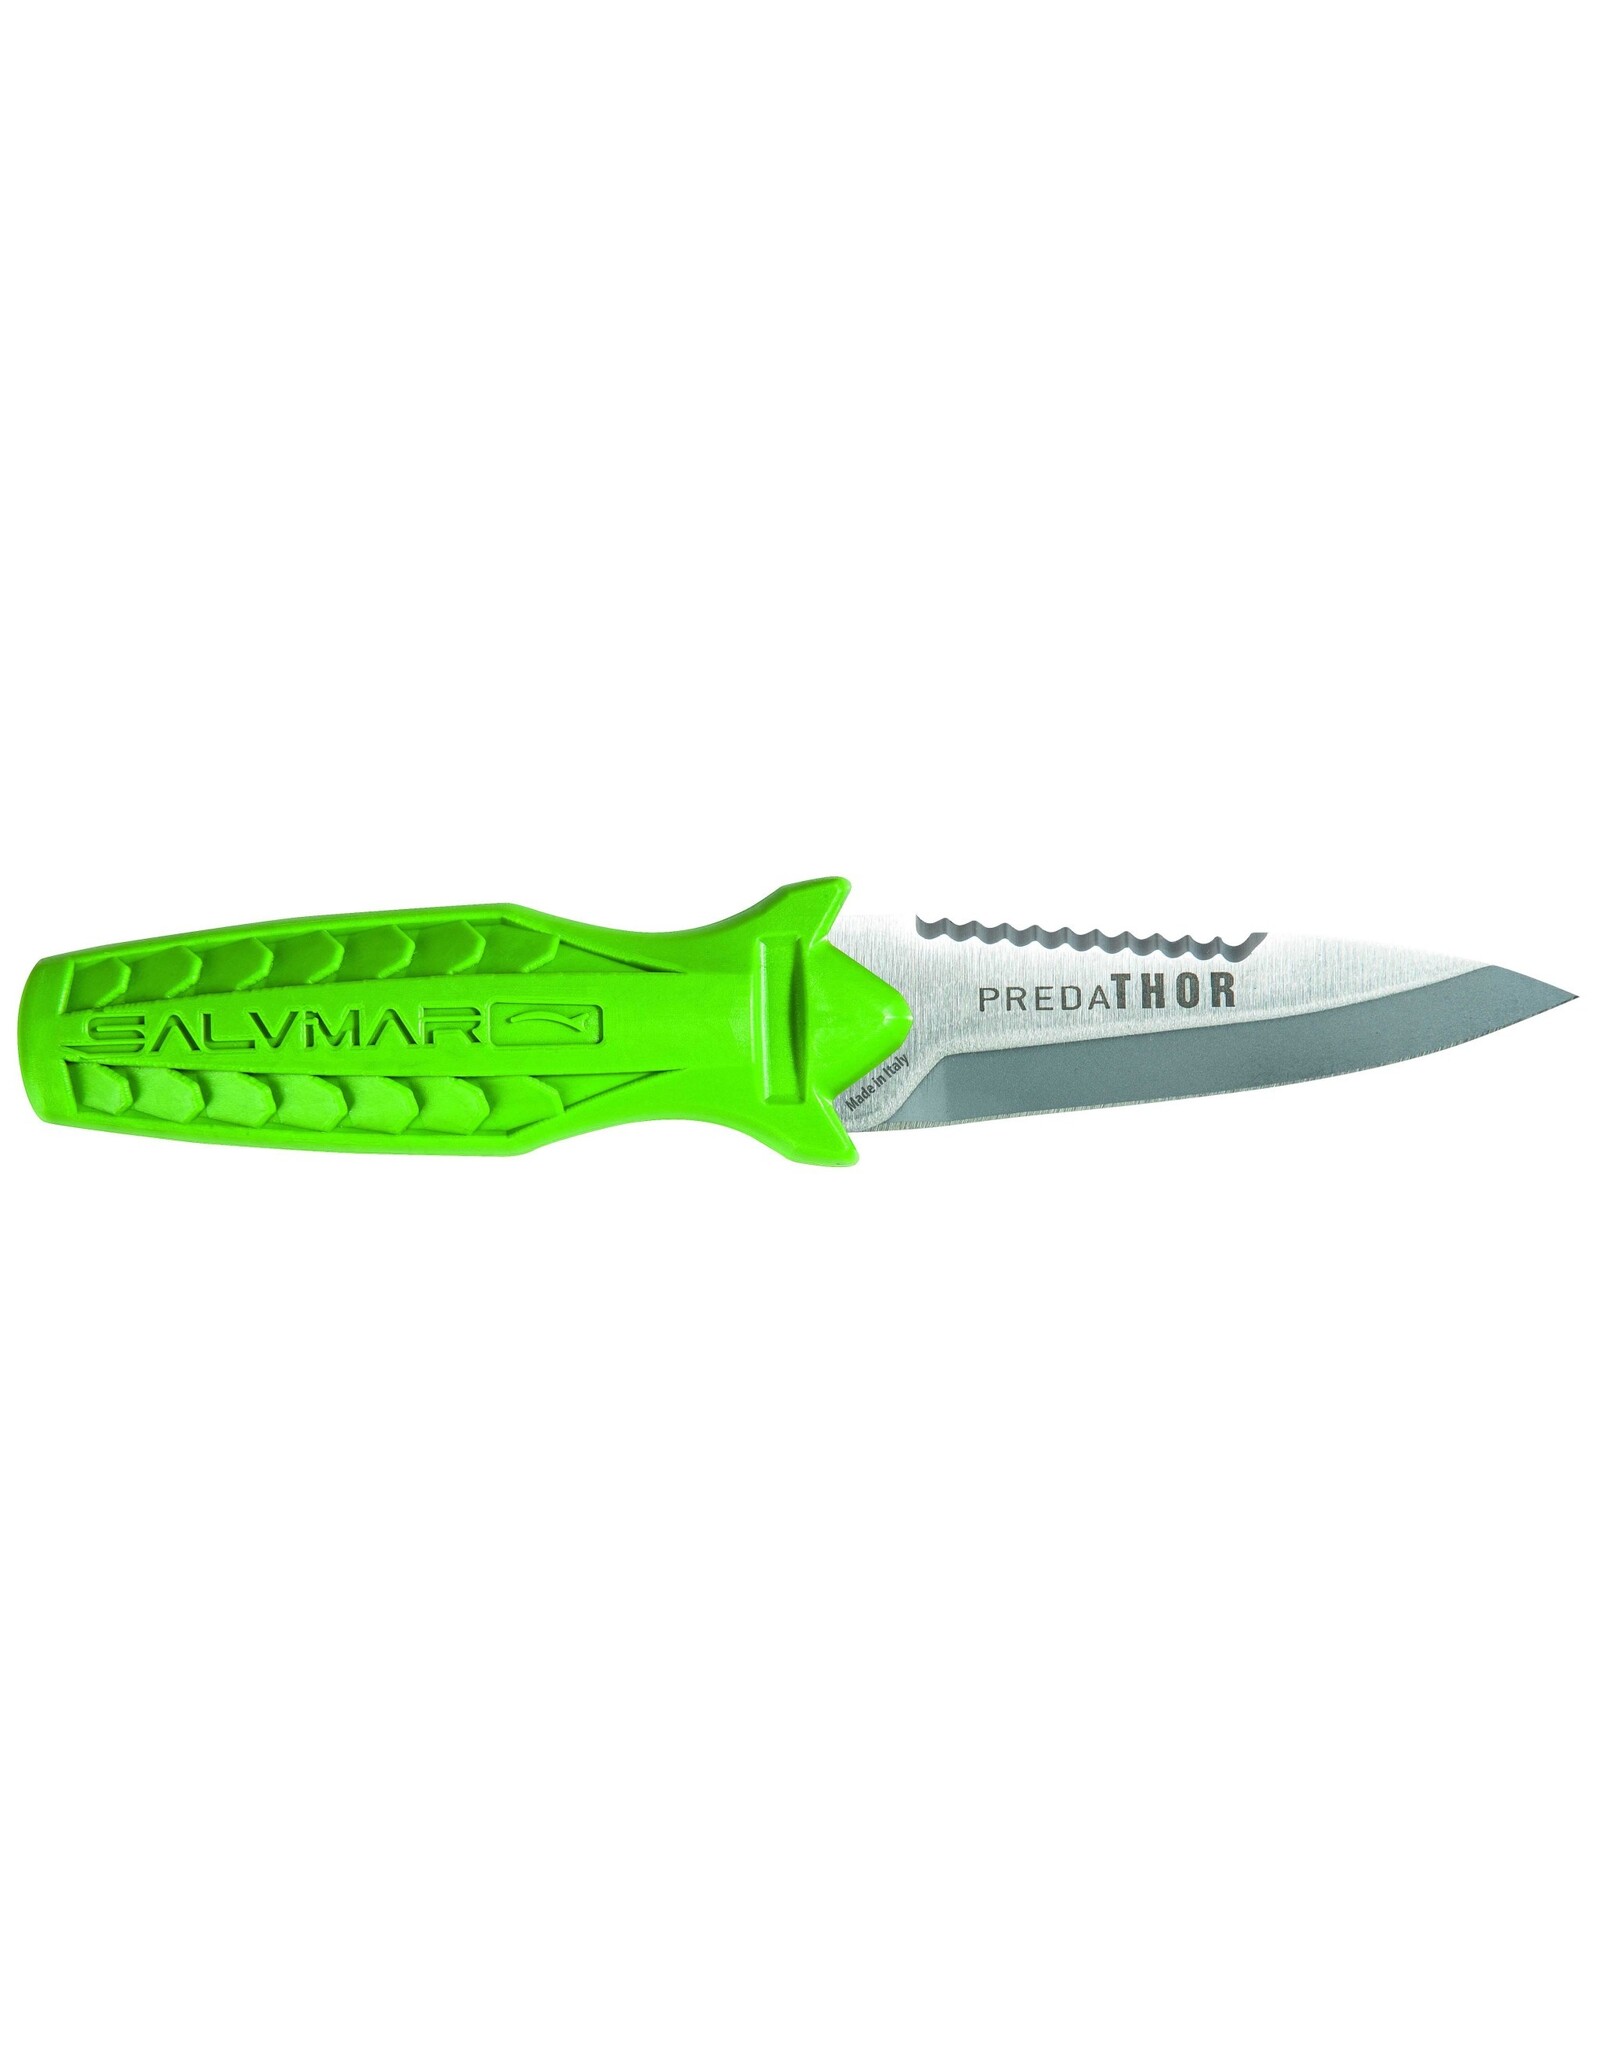 Salvimar Salvimar Knife Predathor - Acid Green